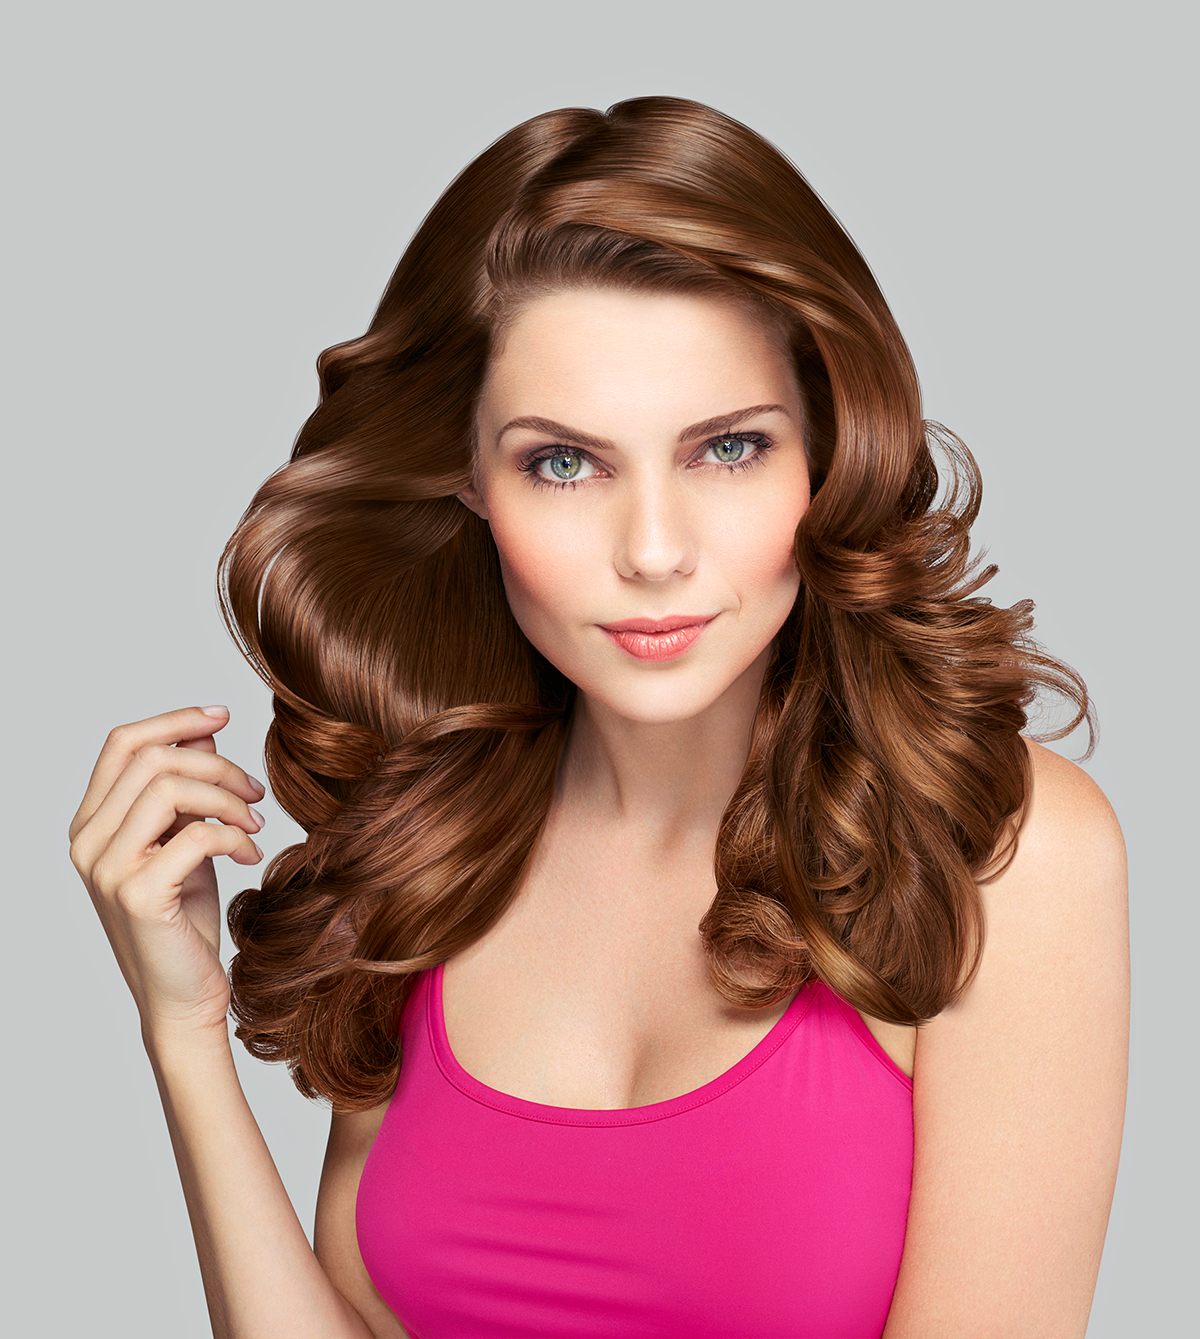 beauty retouch tratamento de imagem tintura hair hairstyle Cosméticos